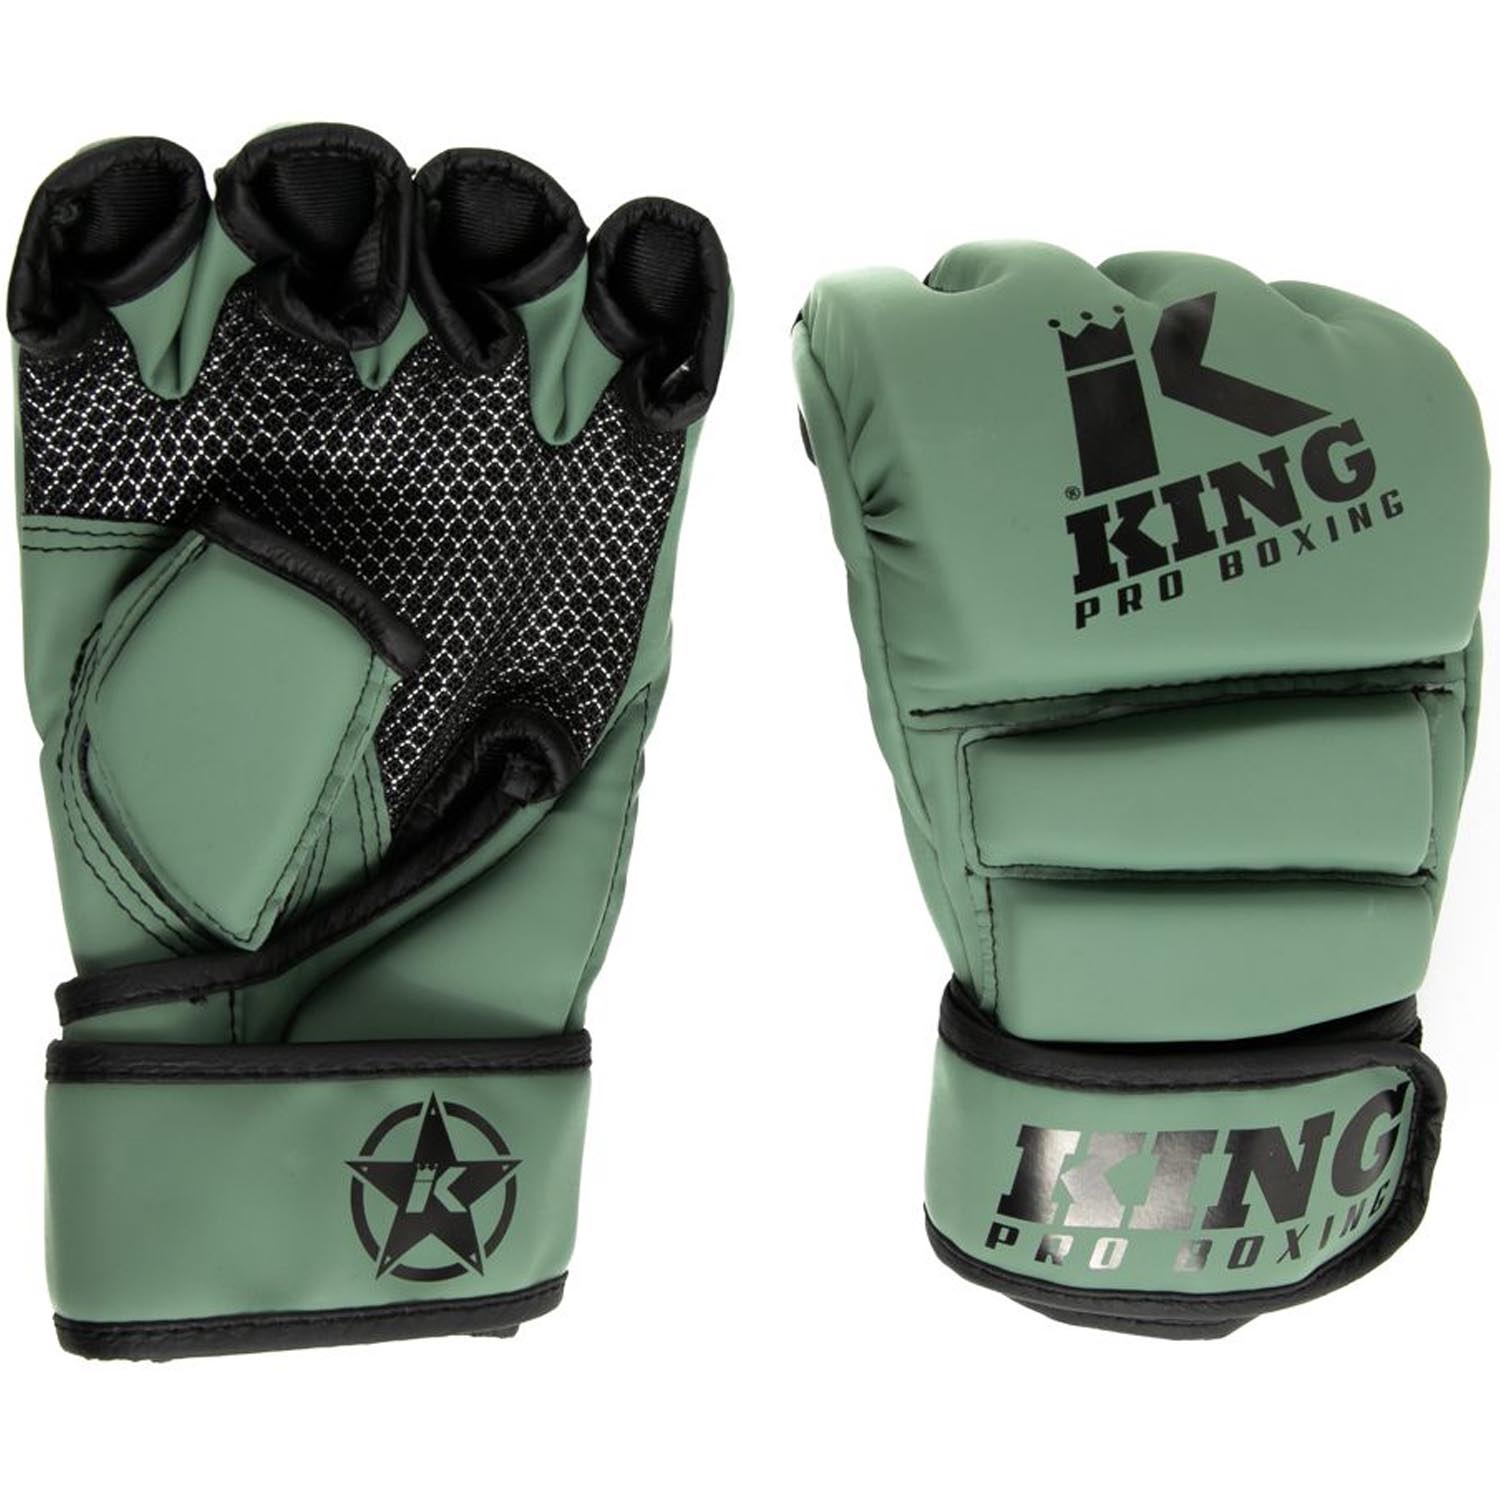 KING PRO BOXING MMA Handschuhe, Revo 3, khaki, M